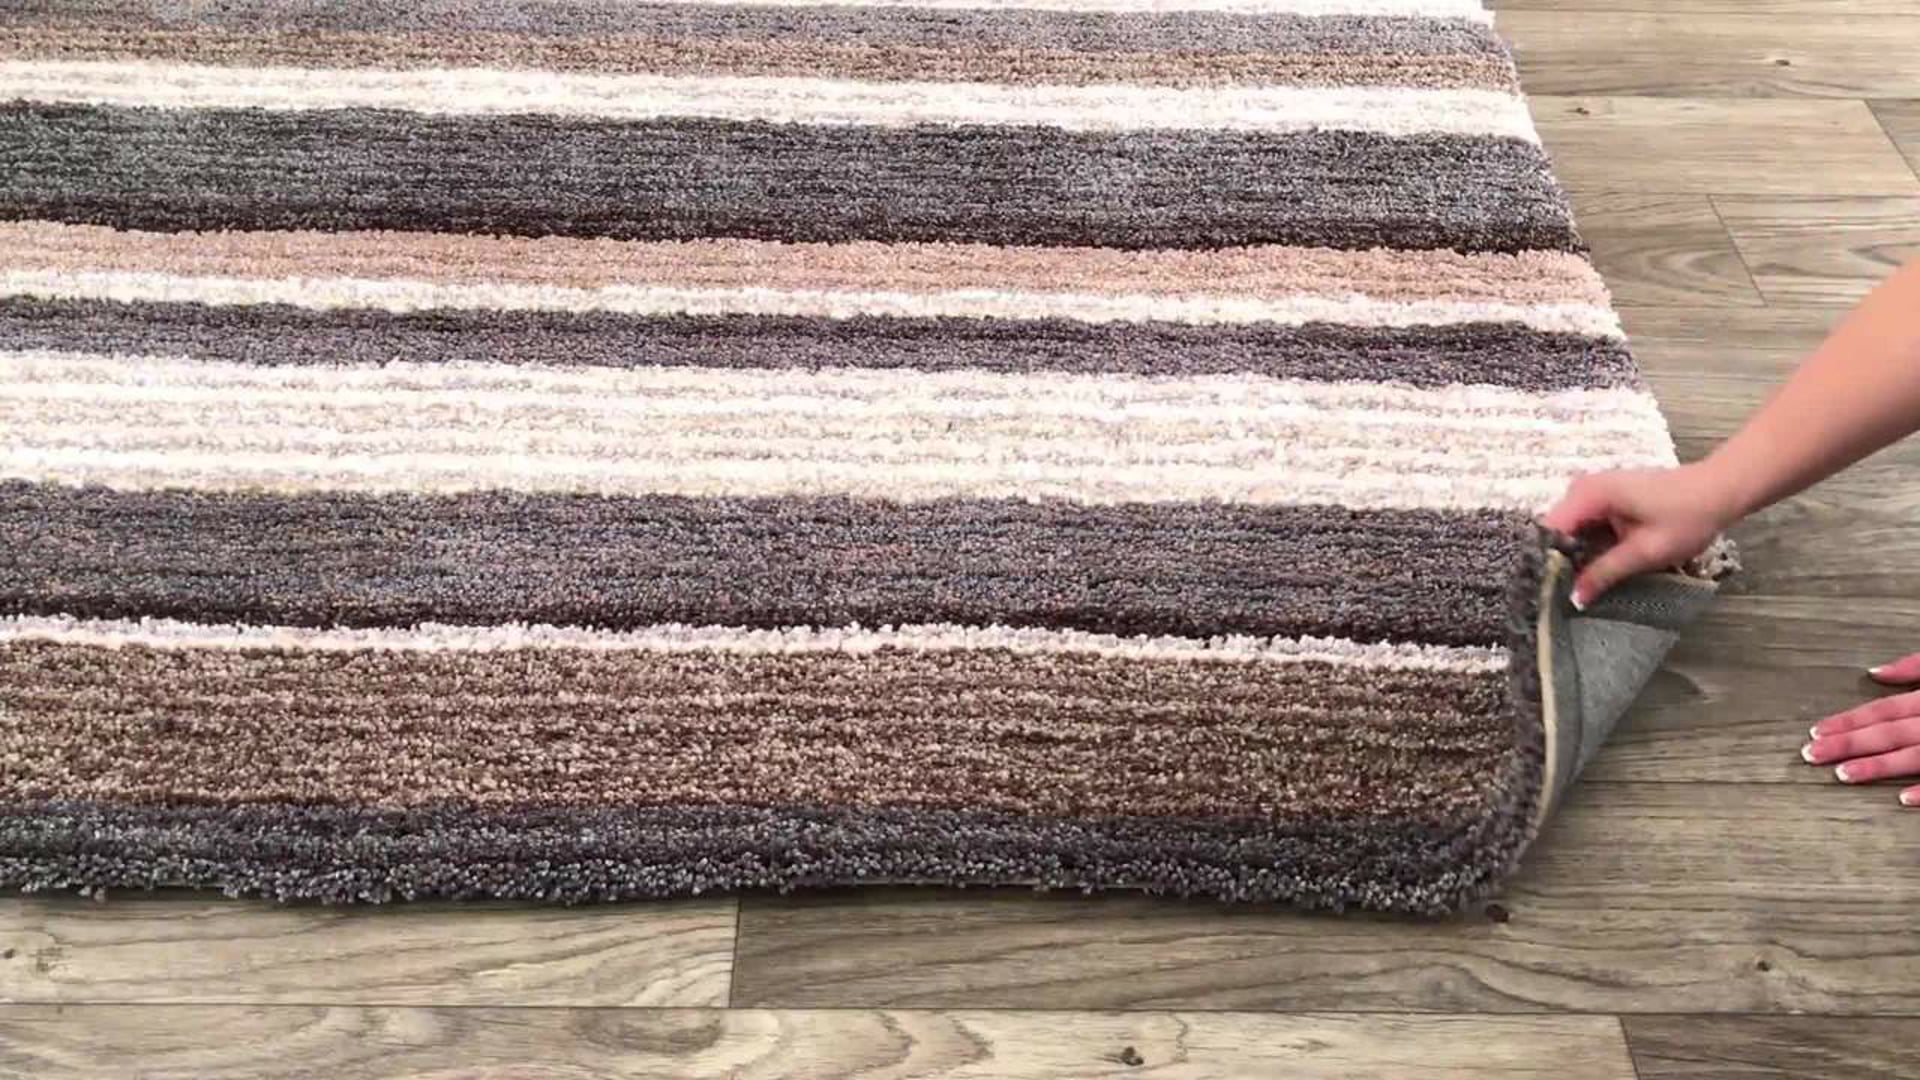 Hand-Tufted Striped Shaggy Plush Shag Rug, Beige, Multi, 8'x10'